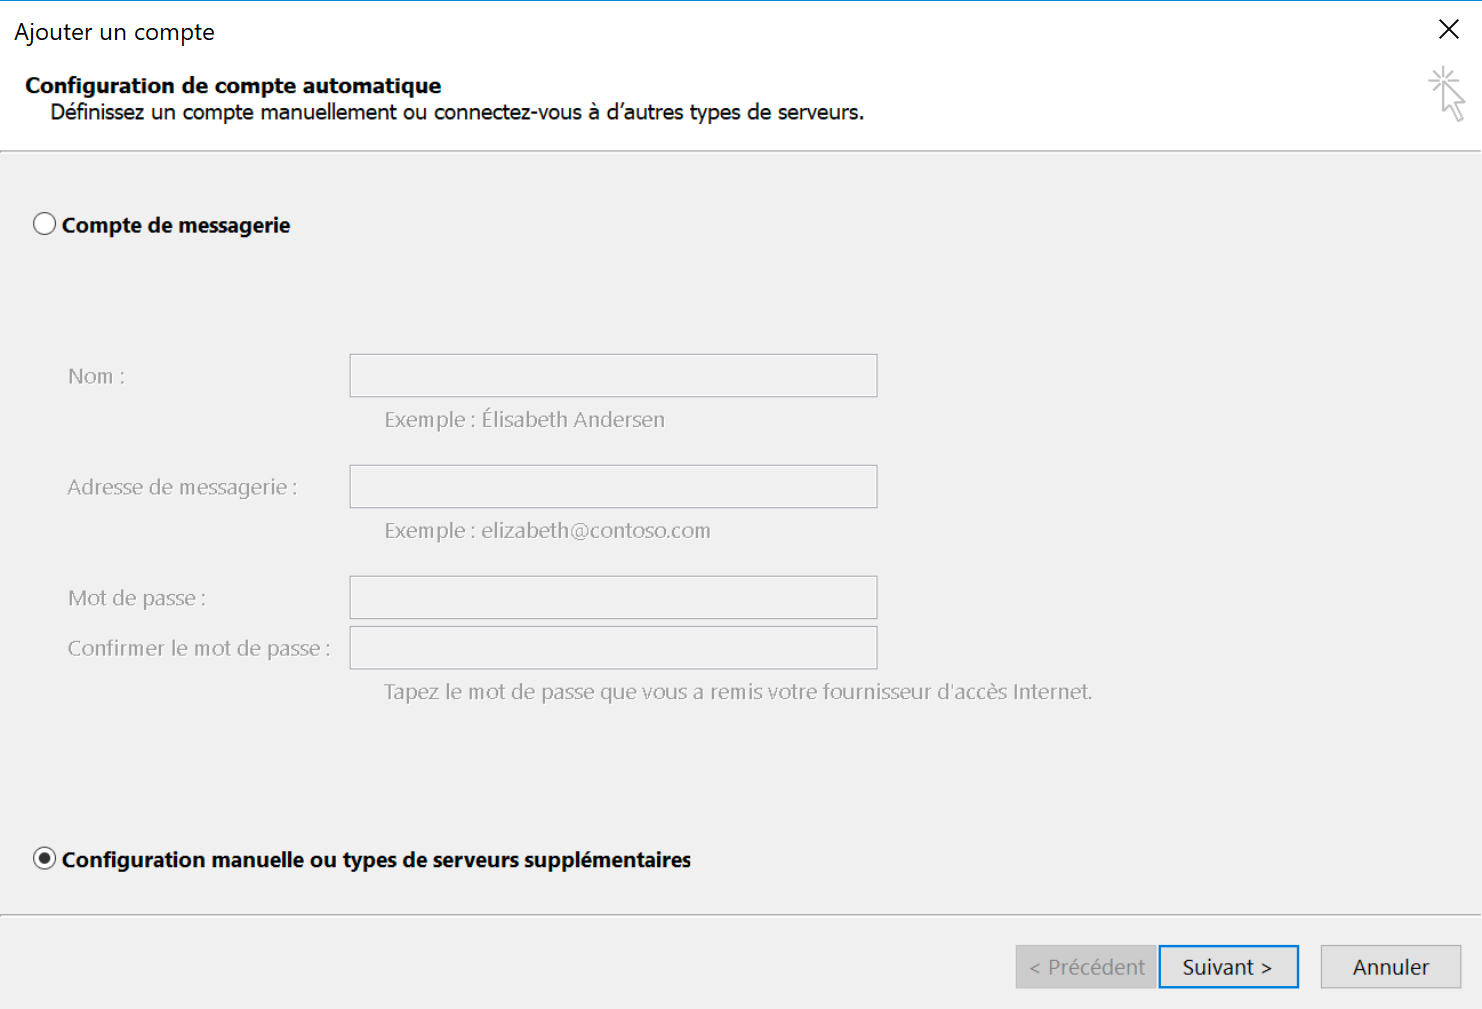 Outlook 2013 : Configuration manuelle